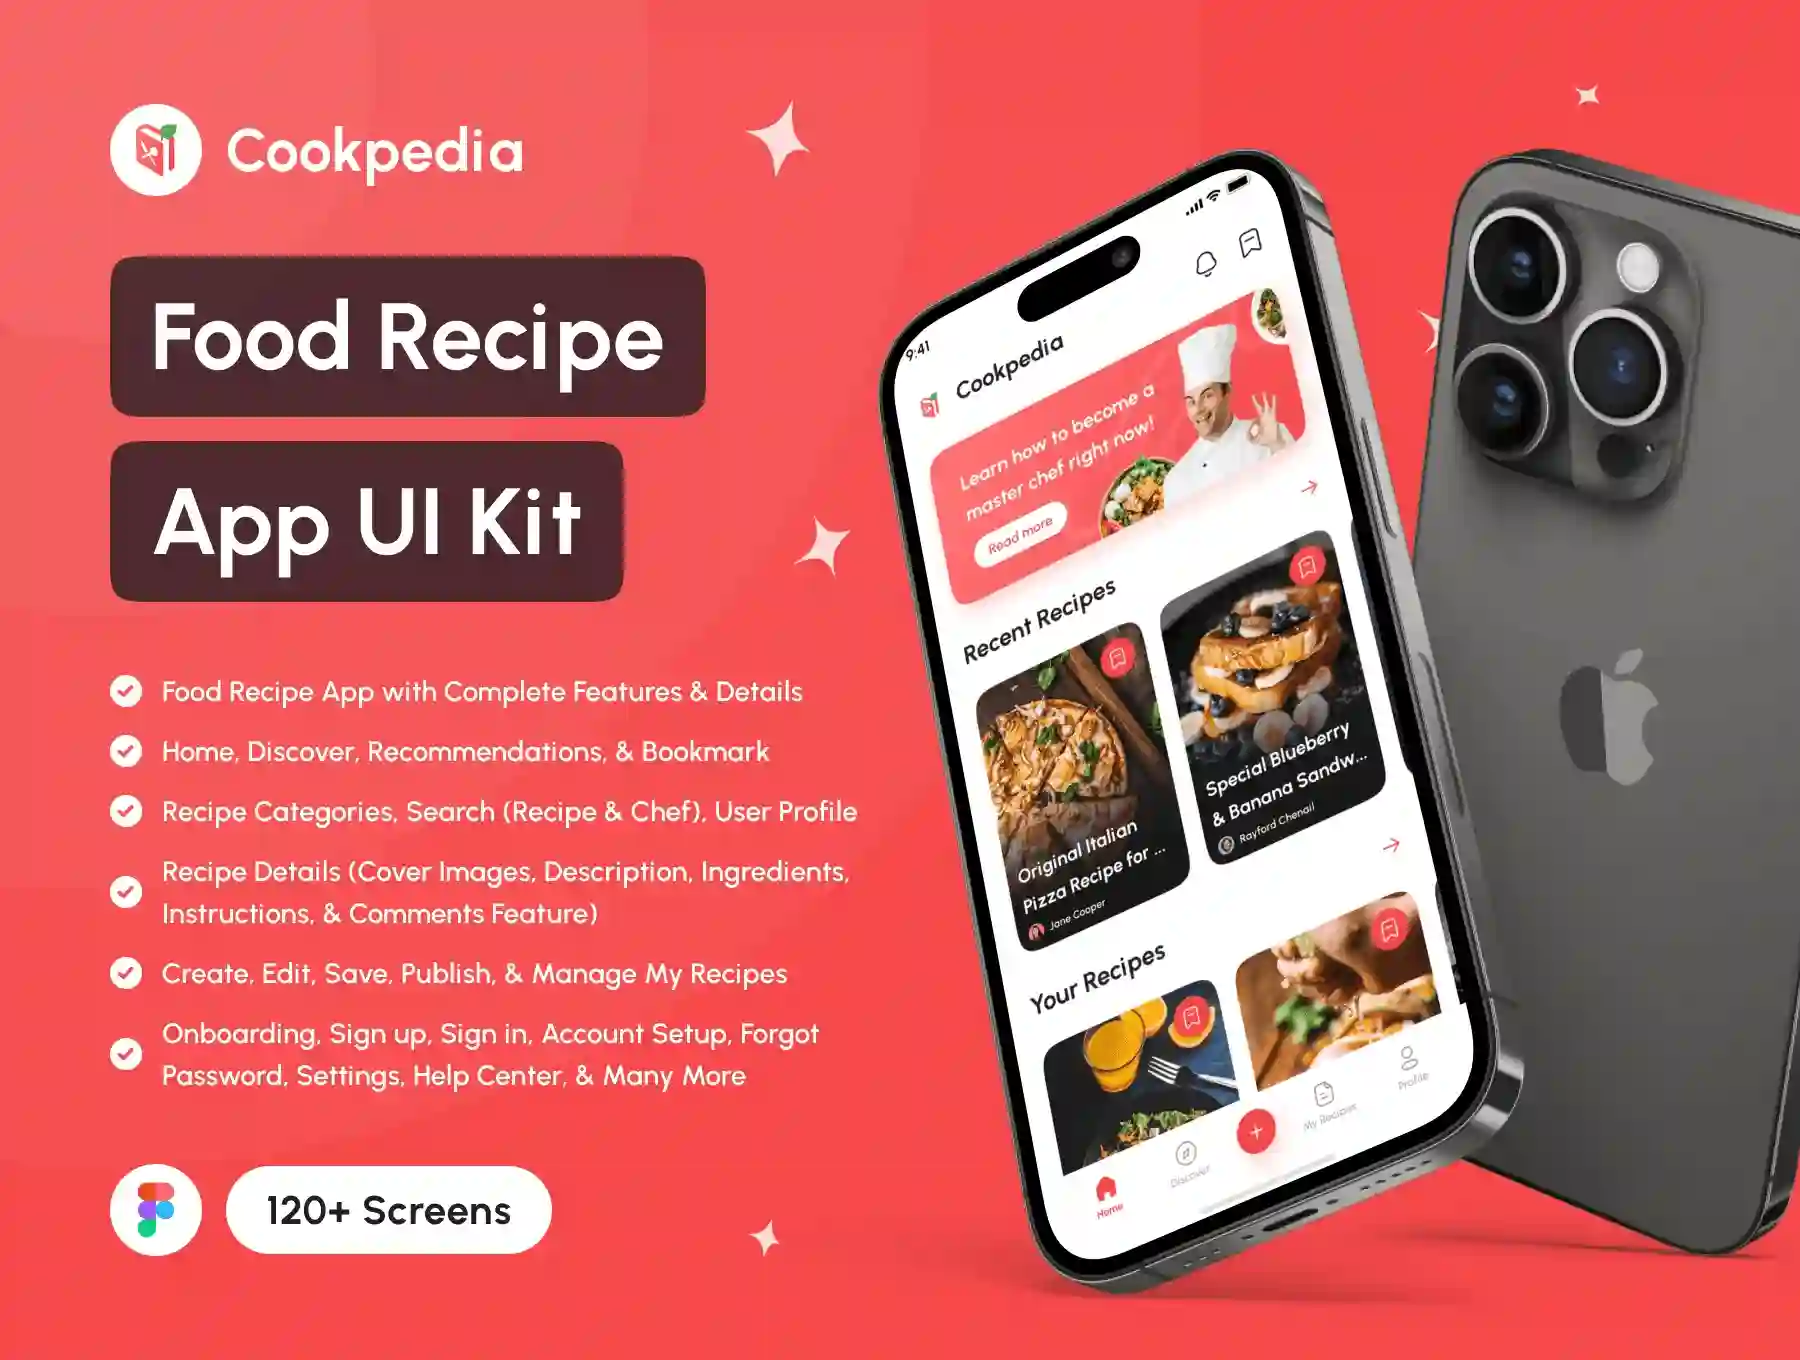 Food Recipe App UI Kit